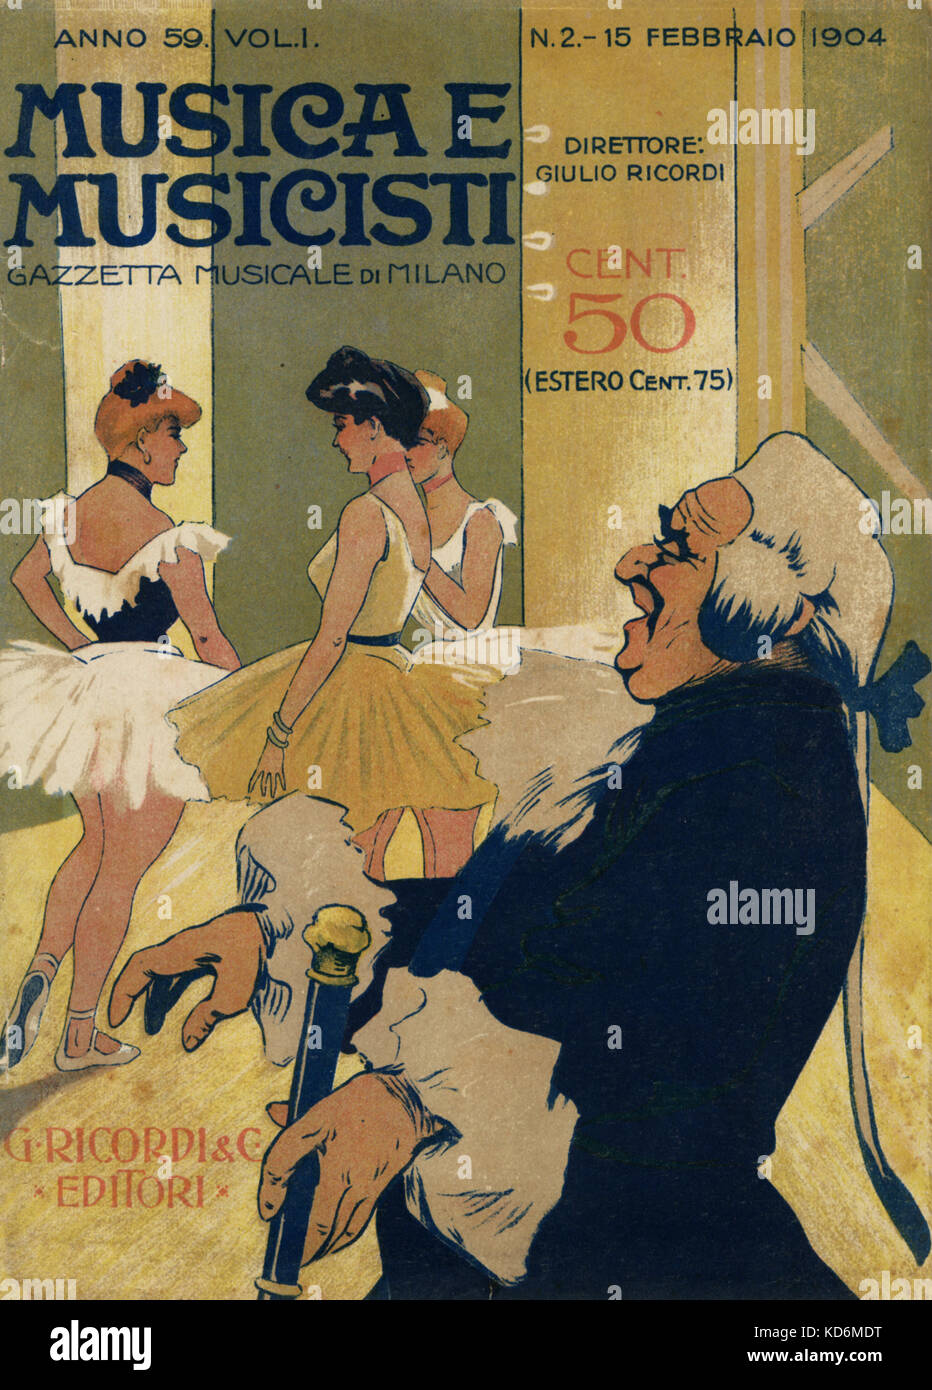 Musica e Musicisti ' cubierta de vuelta la música italiana del siglo XX, , la revista Gaceta musical de Milán, con tres bailarinas en típico estilo del 1900, con el ballet master. Foto de stock